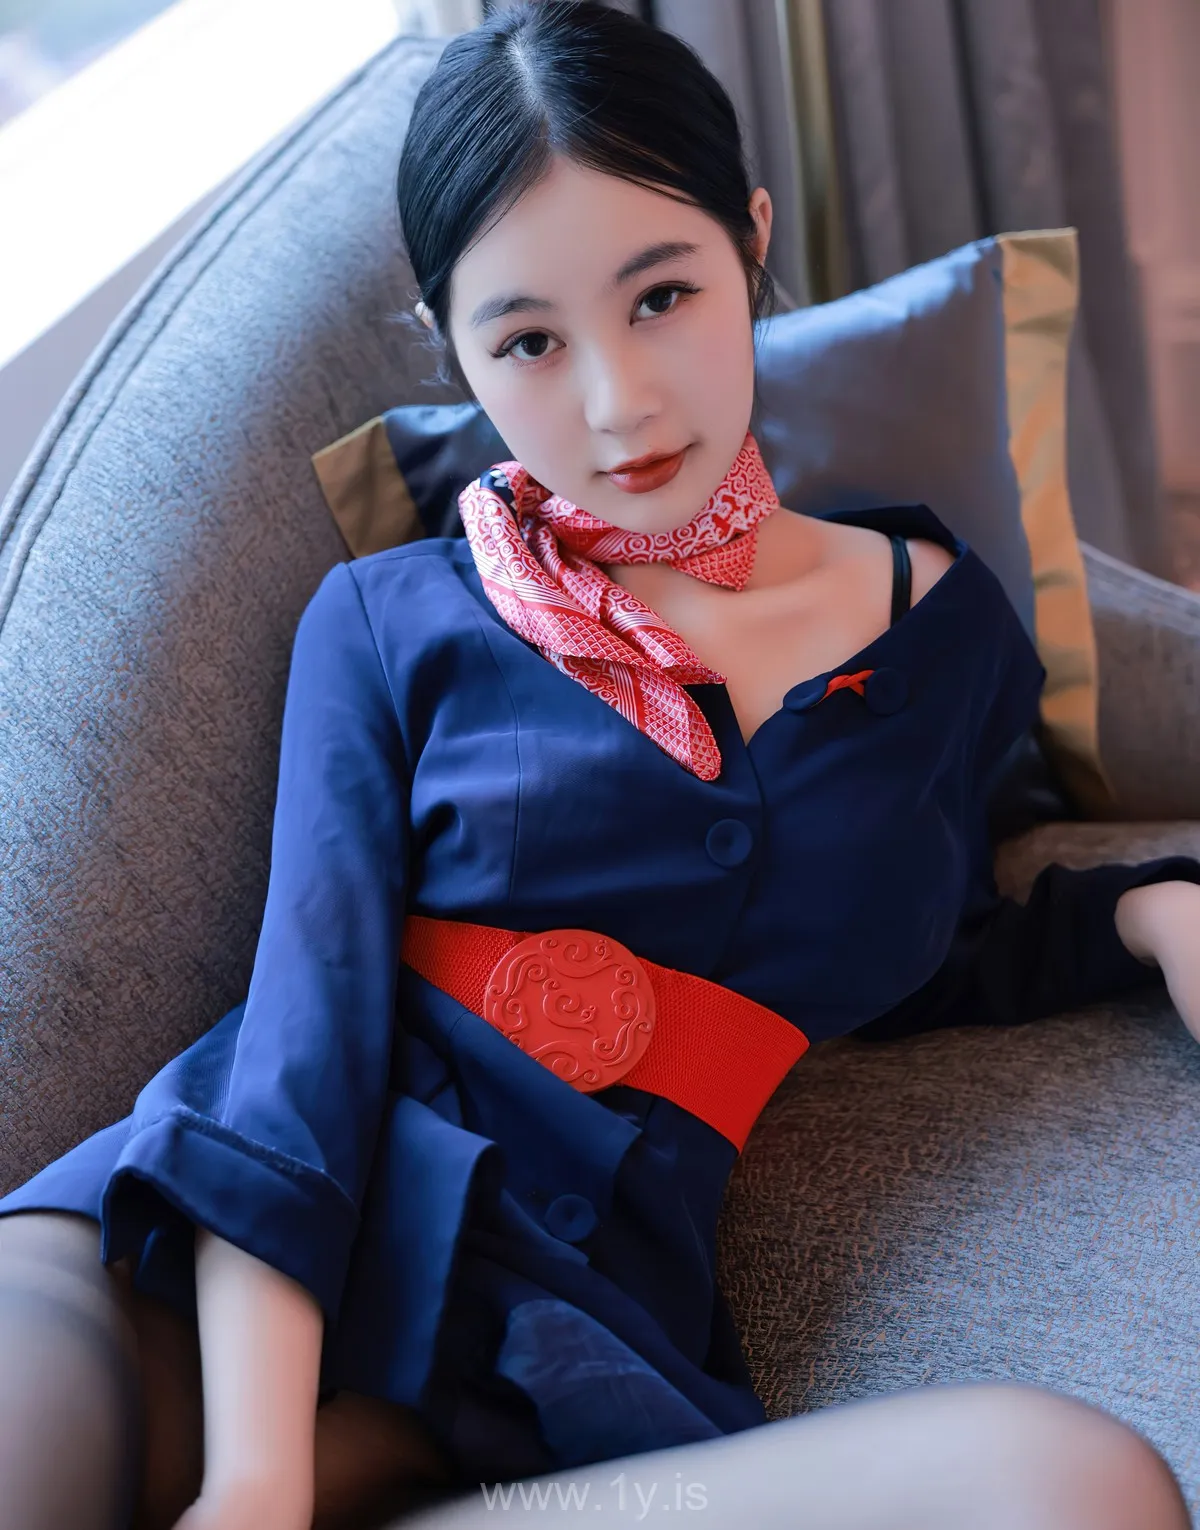 XIUREN(秀人网) No.5579 Pretty & Fashionable Asian Women 謝晚晚